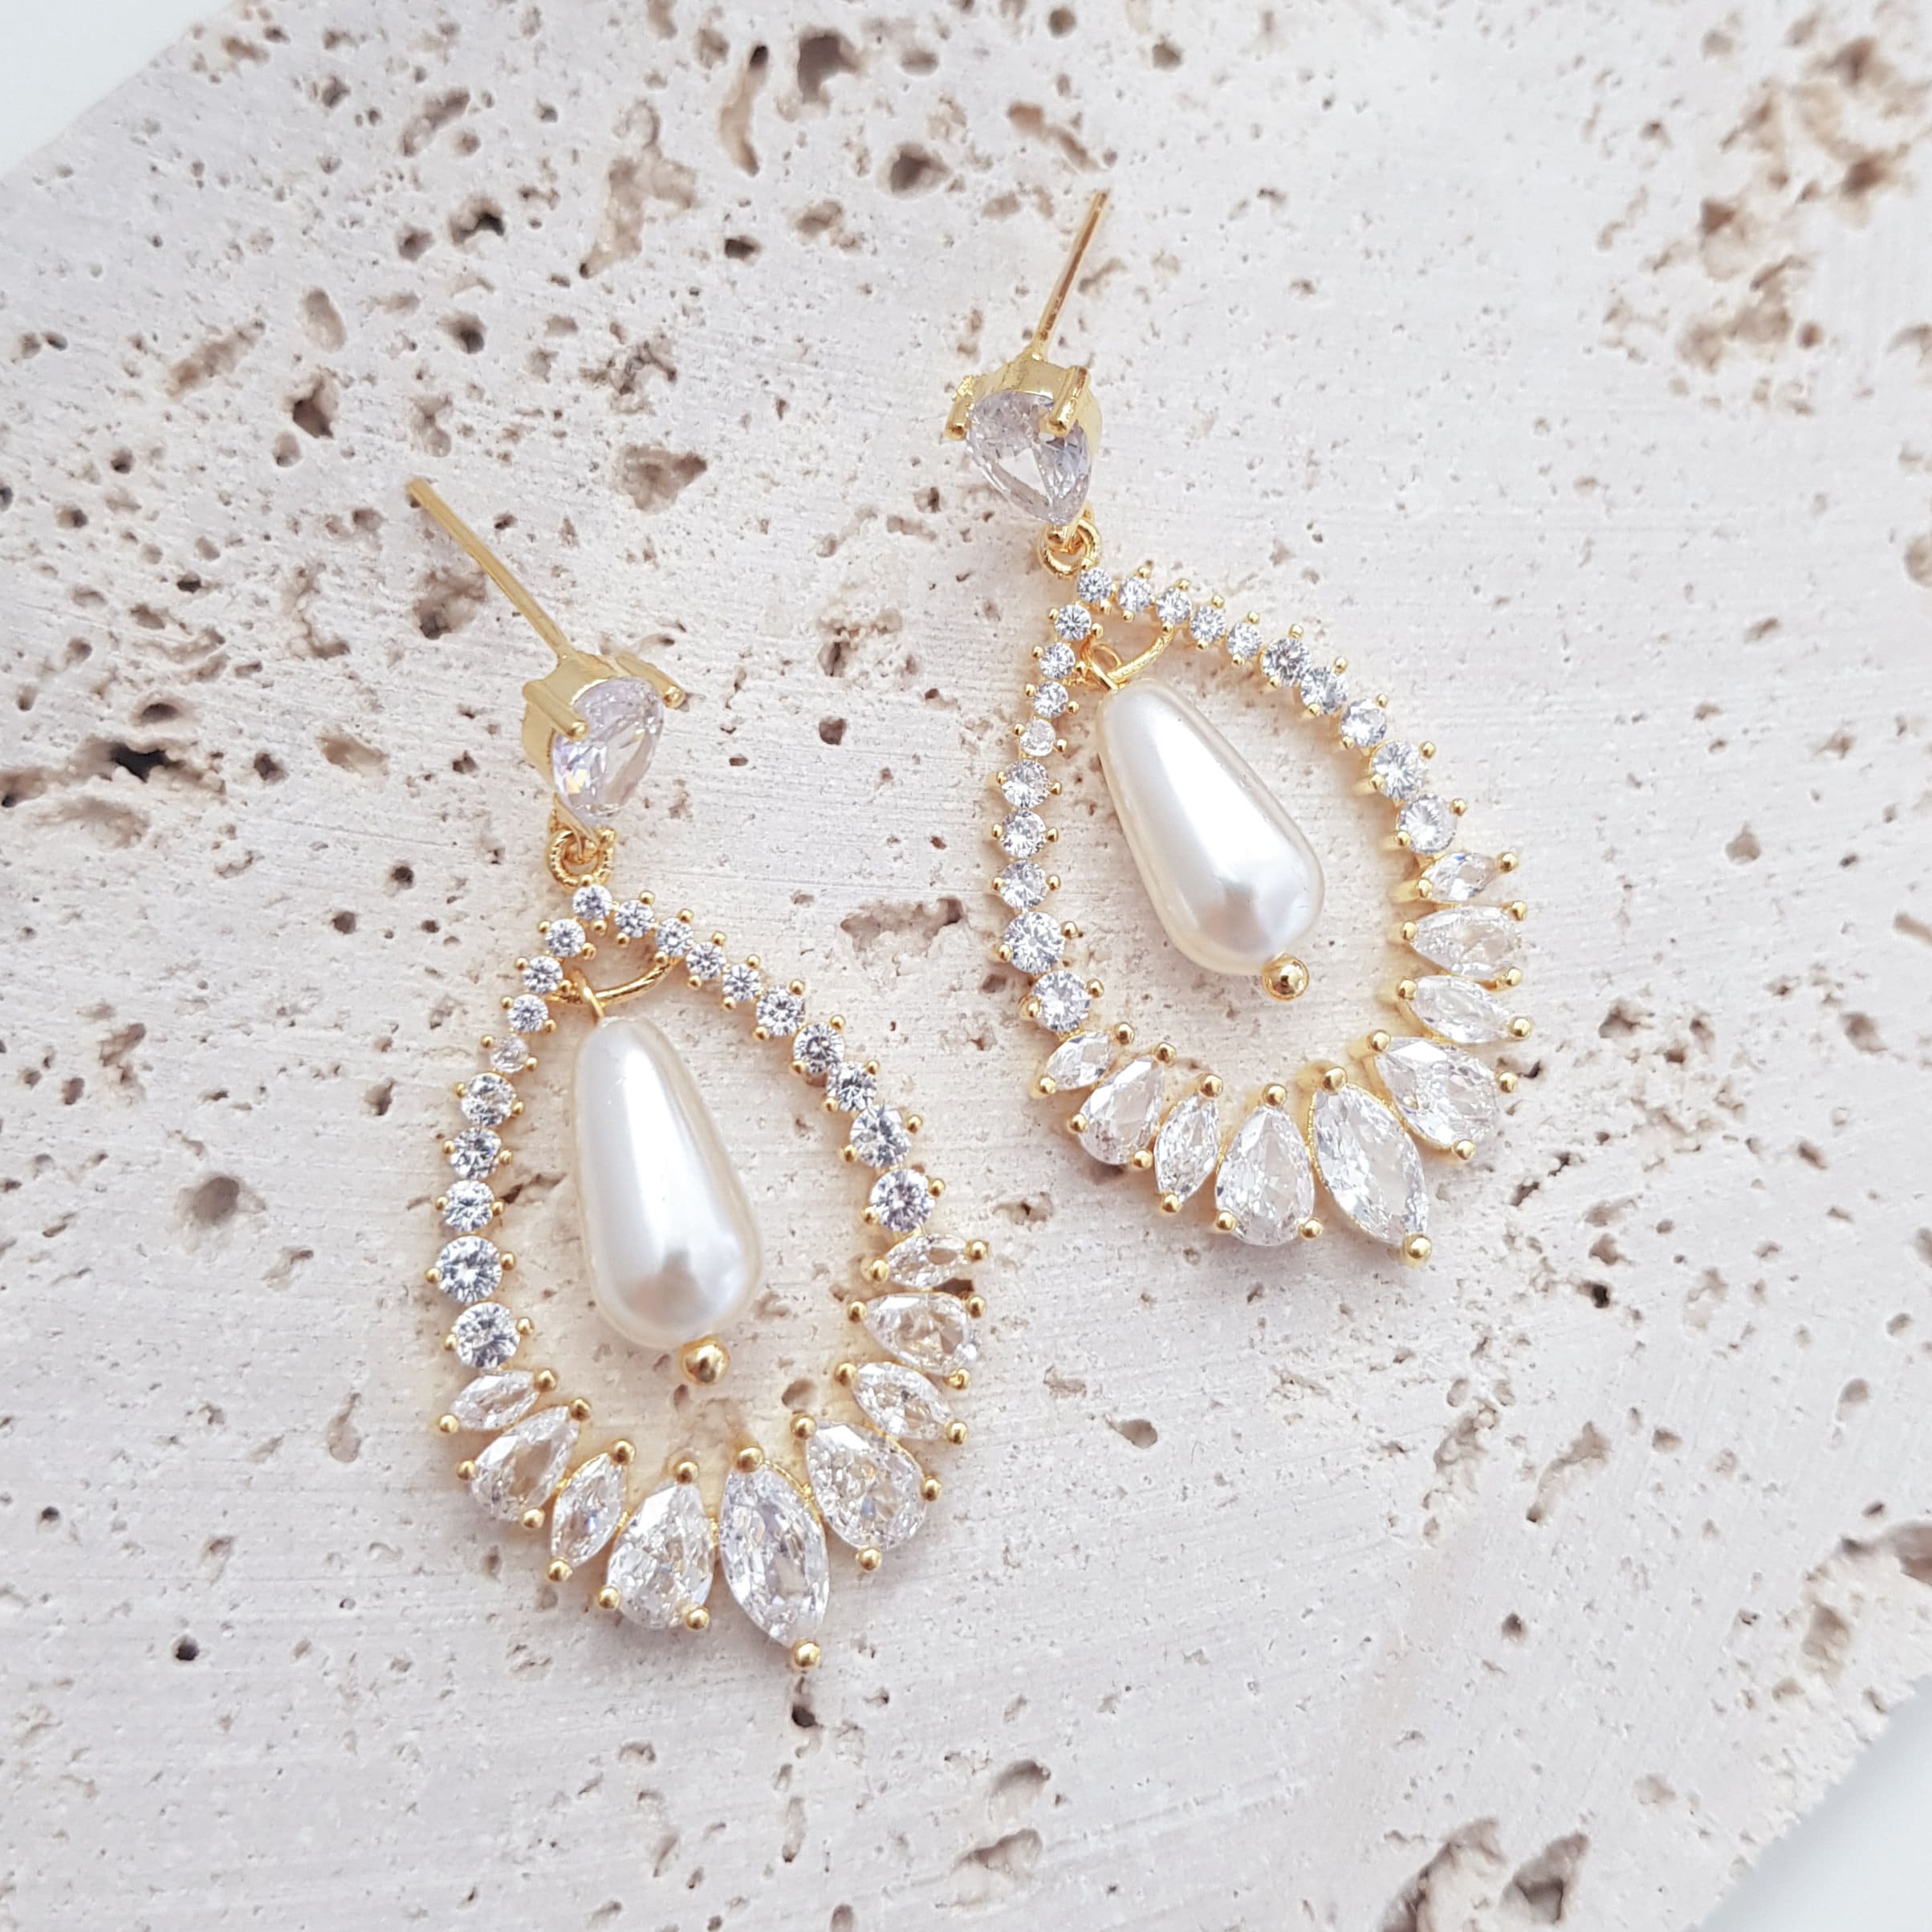 Pearl Earrings, Vintage Style Earrings, Gold Pearl Earrings, Crystal Earrings, Wedding Drop Earrings, Bridesmaid Gift